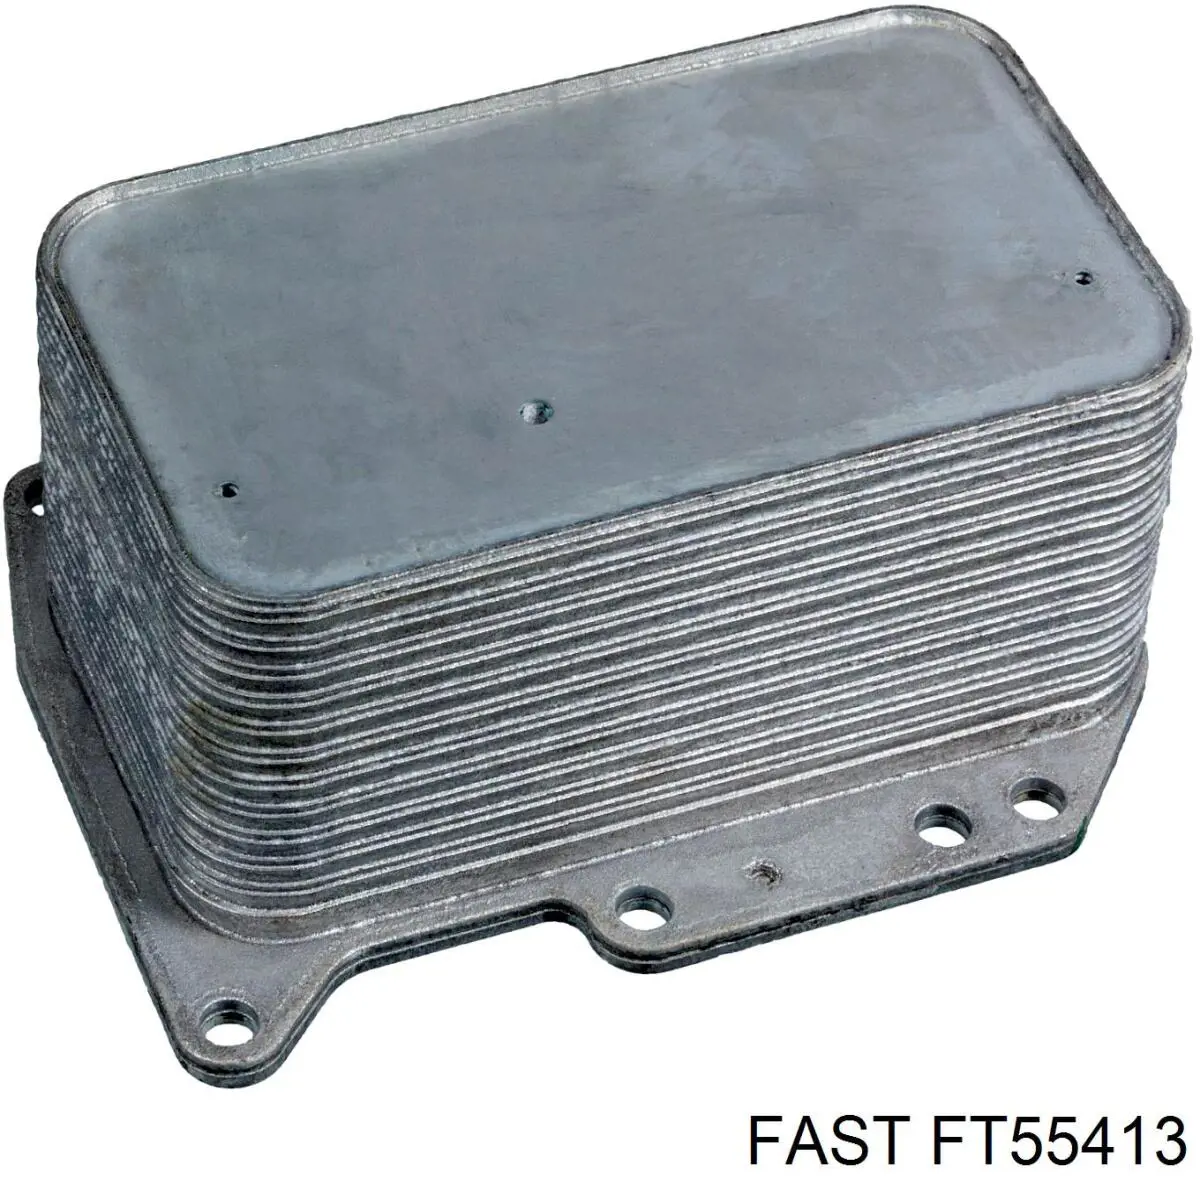 FT55413 Fast caixa do filtro de óleo